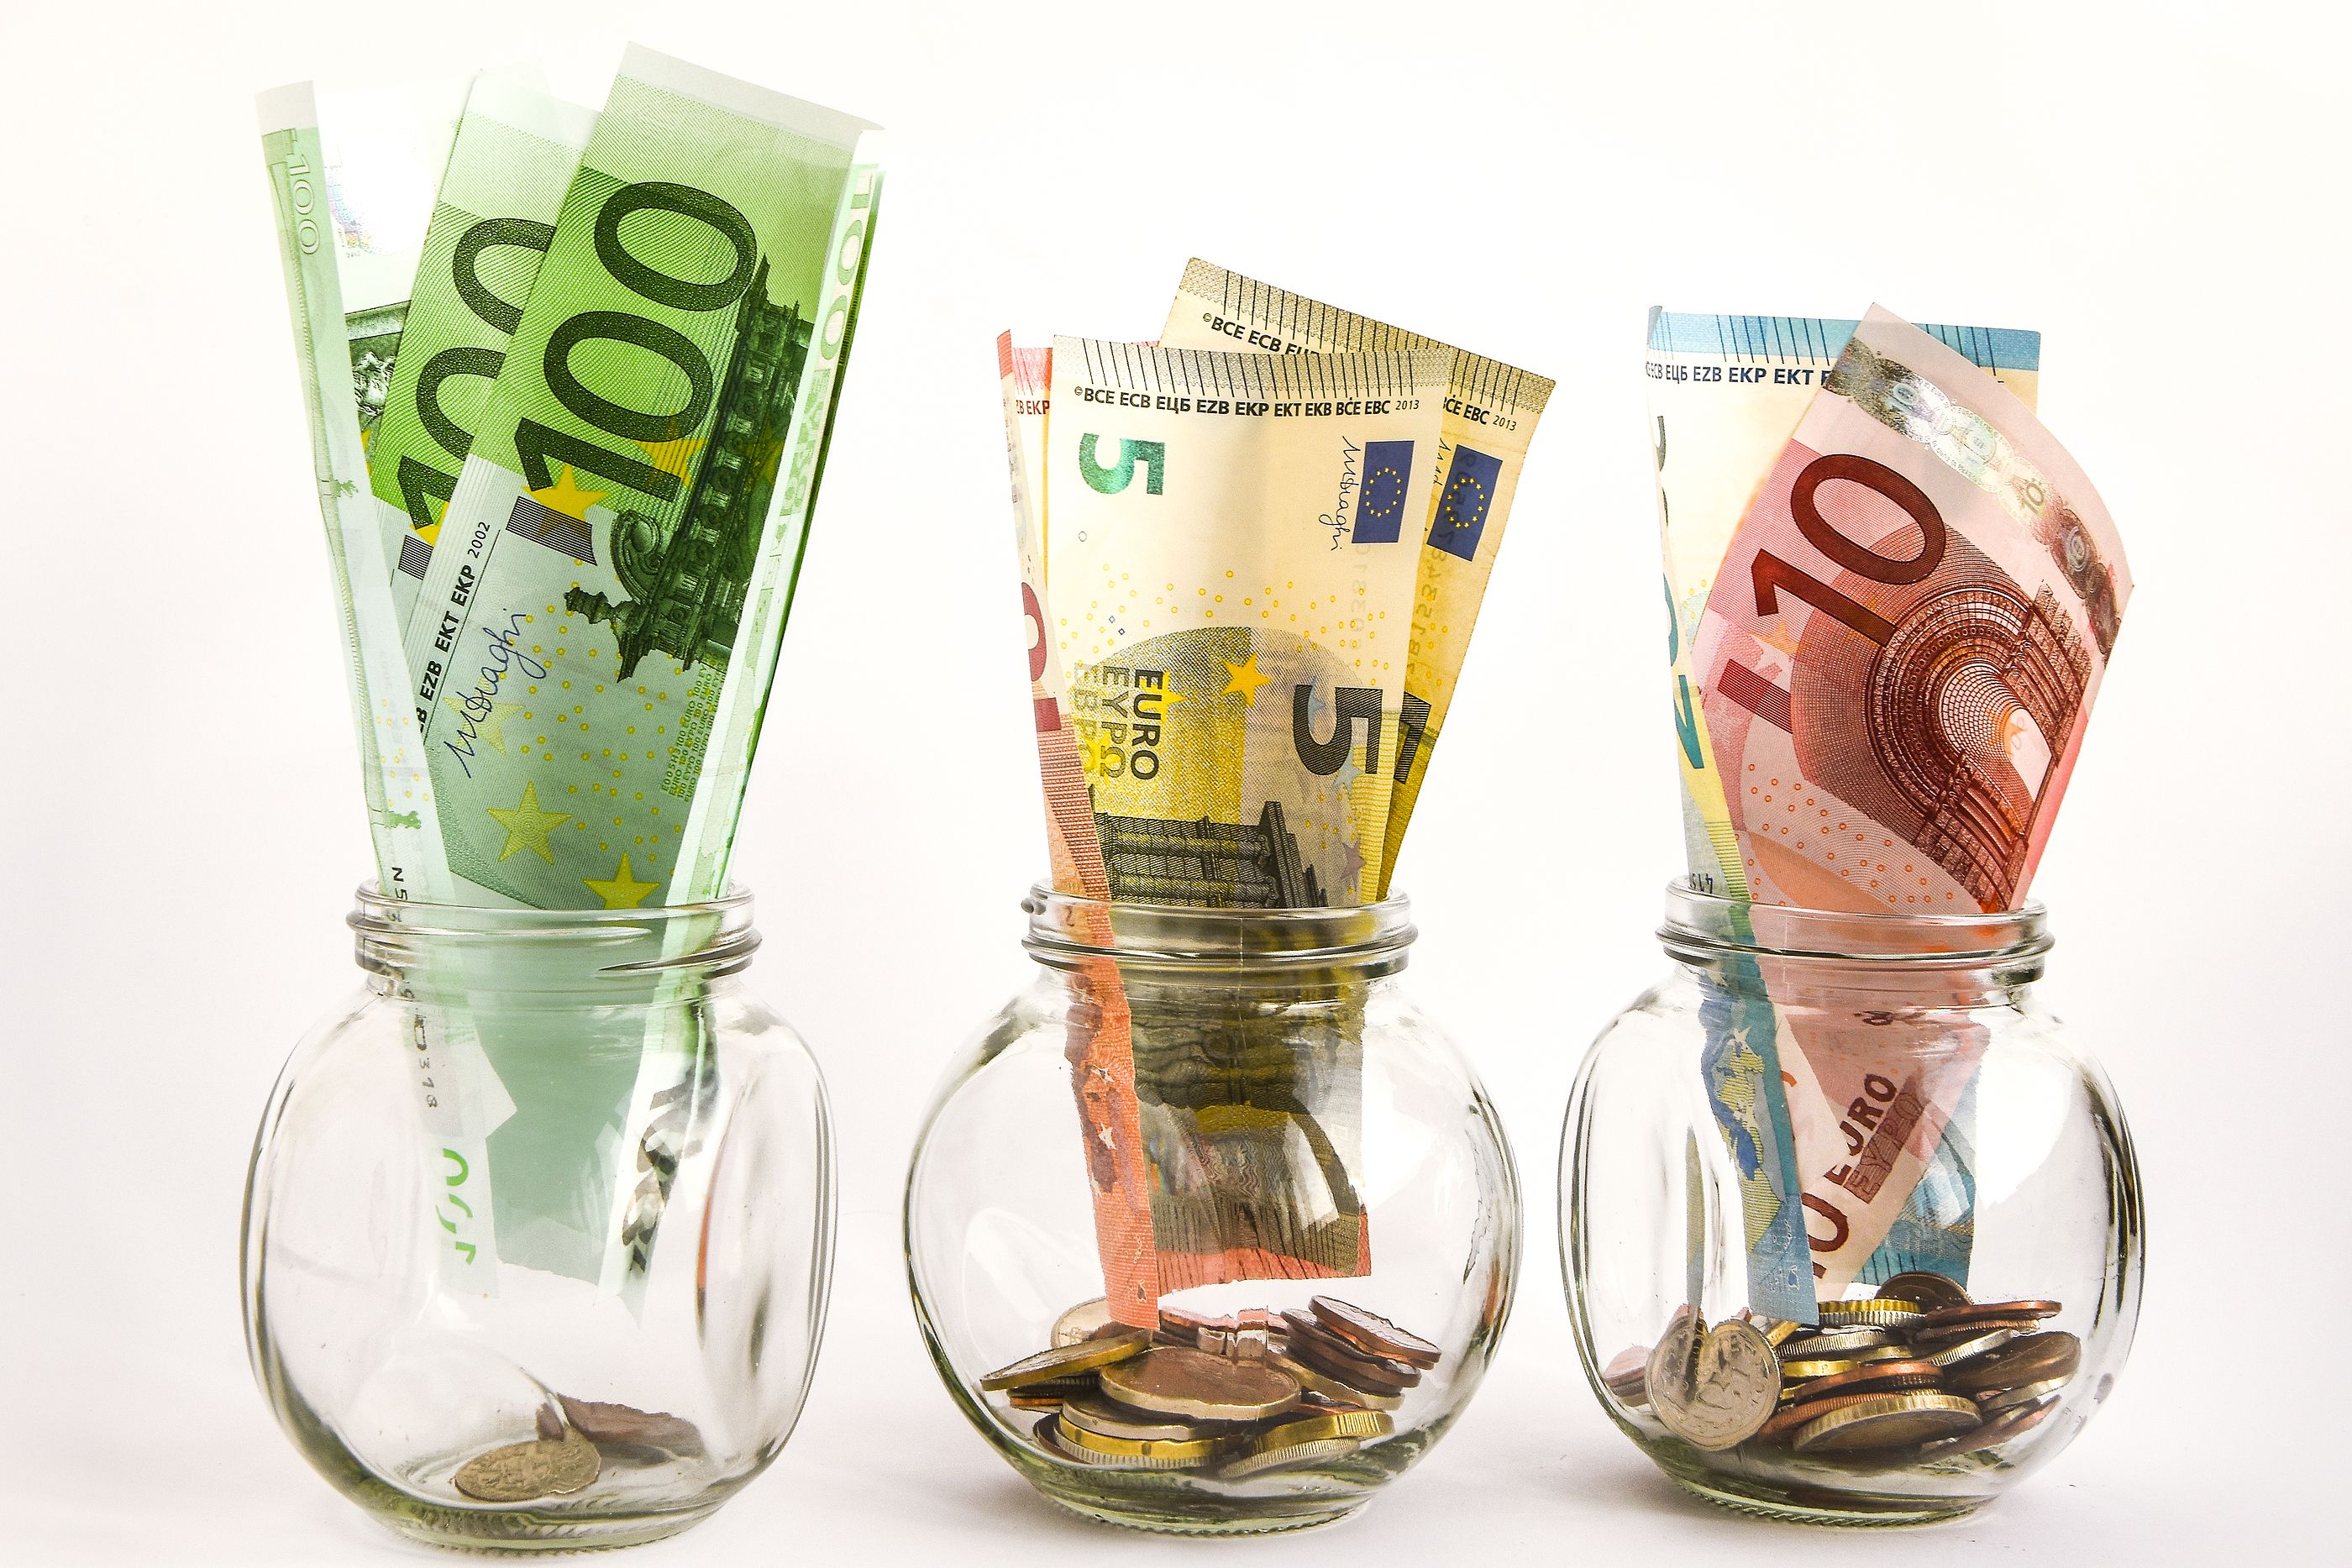 El truco de los tarros para ahorrar hasta 1.400€ al año sin tener un sueldo alto. Foto: Bigstock